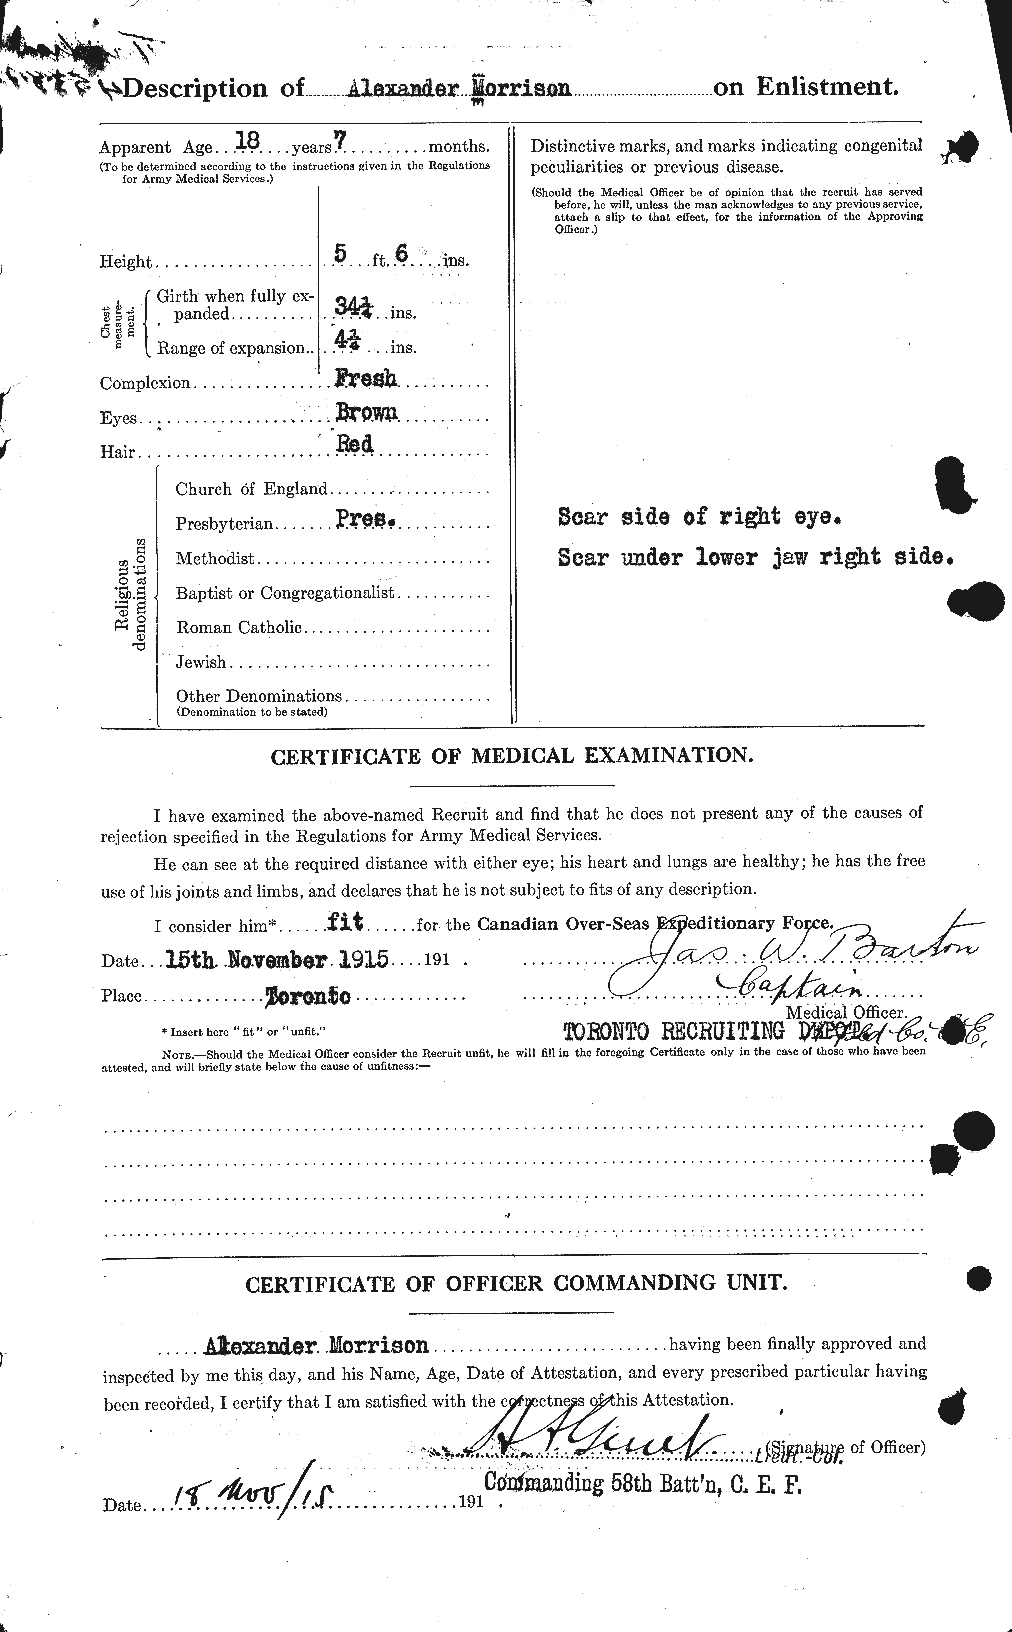 Dossiers du Personnel de la Première Guerre mondiale - CEC 510994b